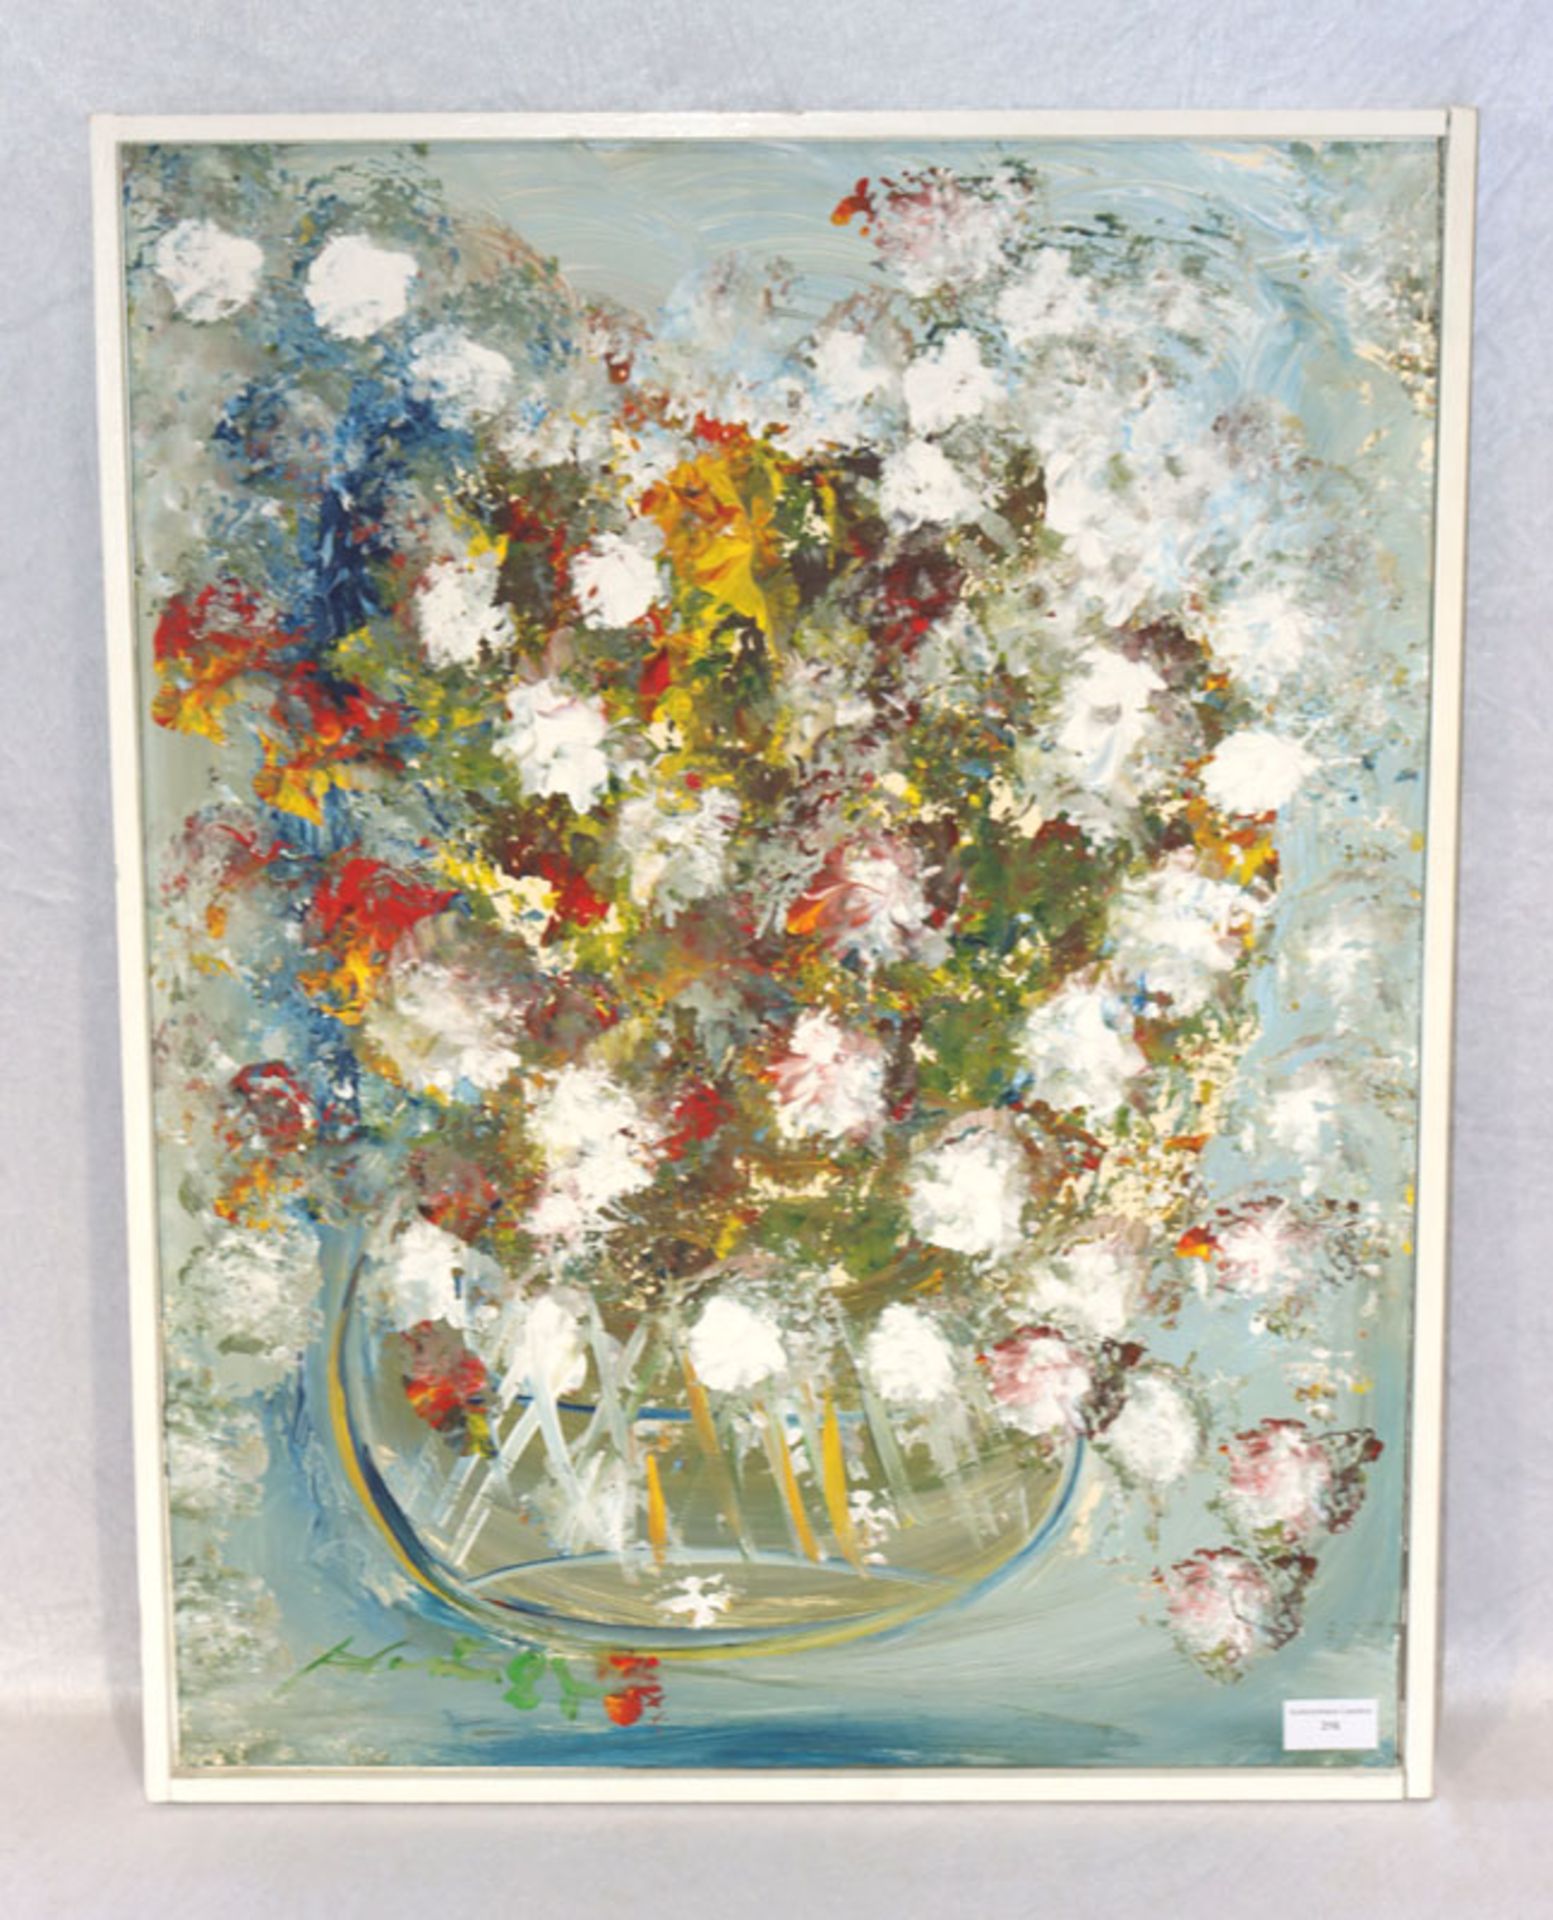 Gemälde ÖL/Hartfaser 'Blumenstillleben', signiert Heck ? 84, Leistenrahmen, incl. Rahmen 67 cm x